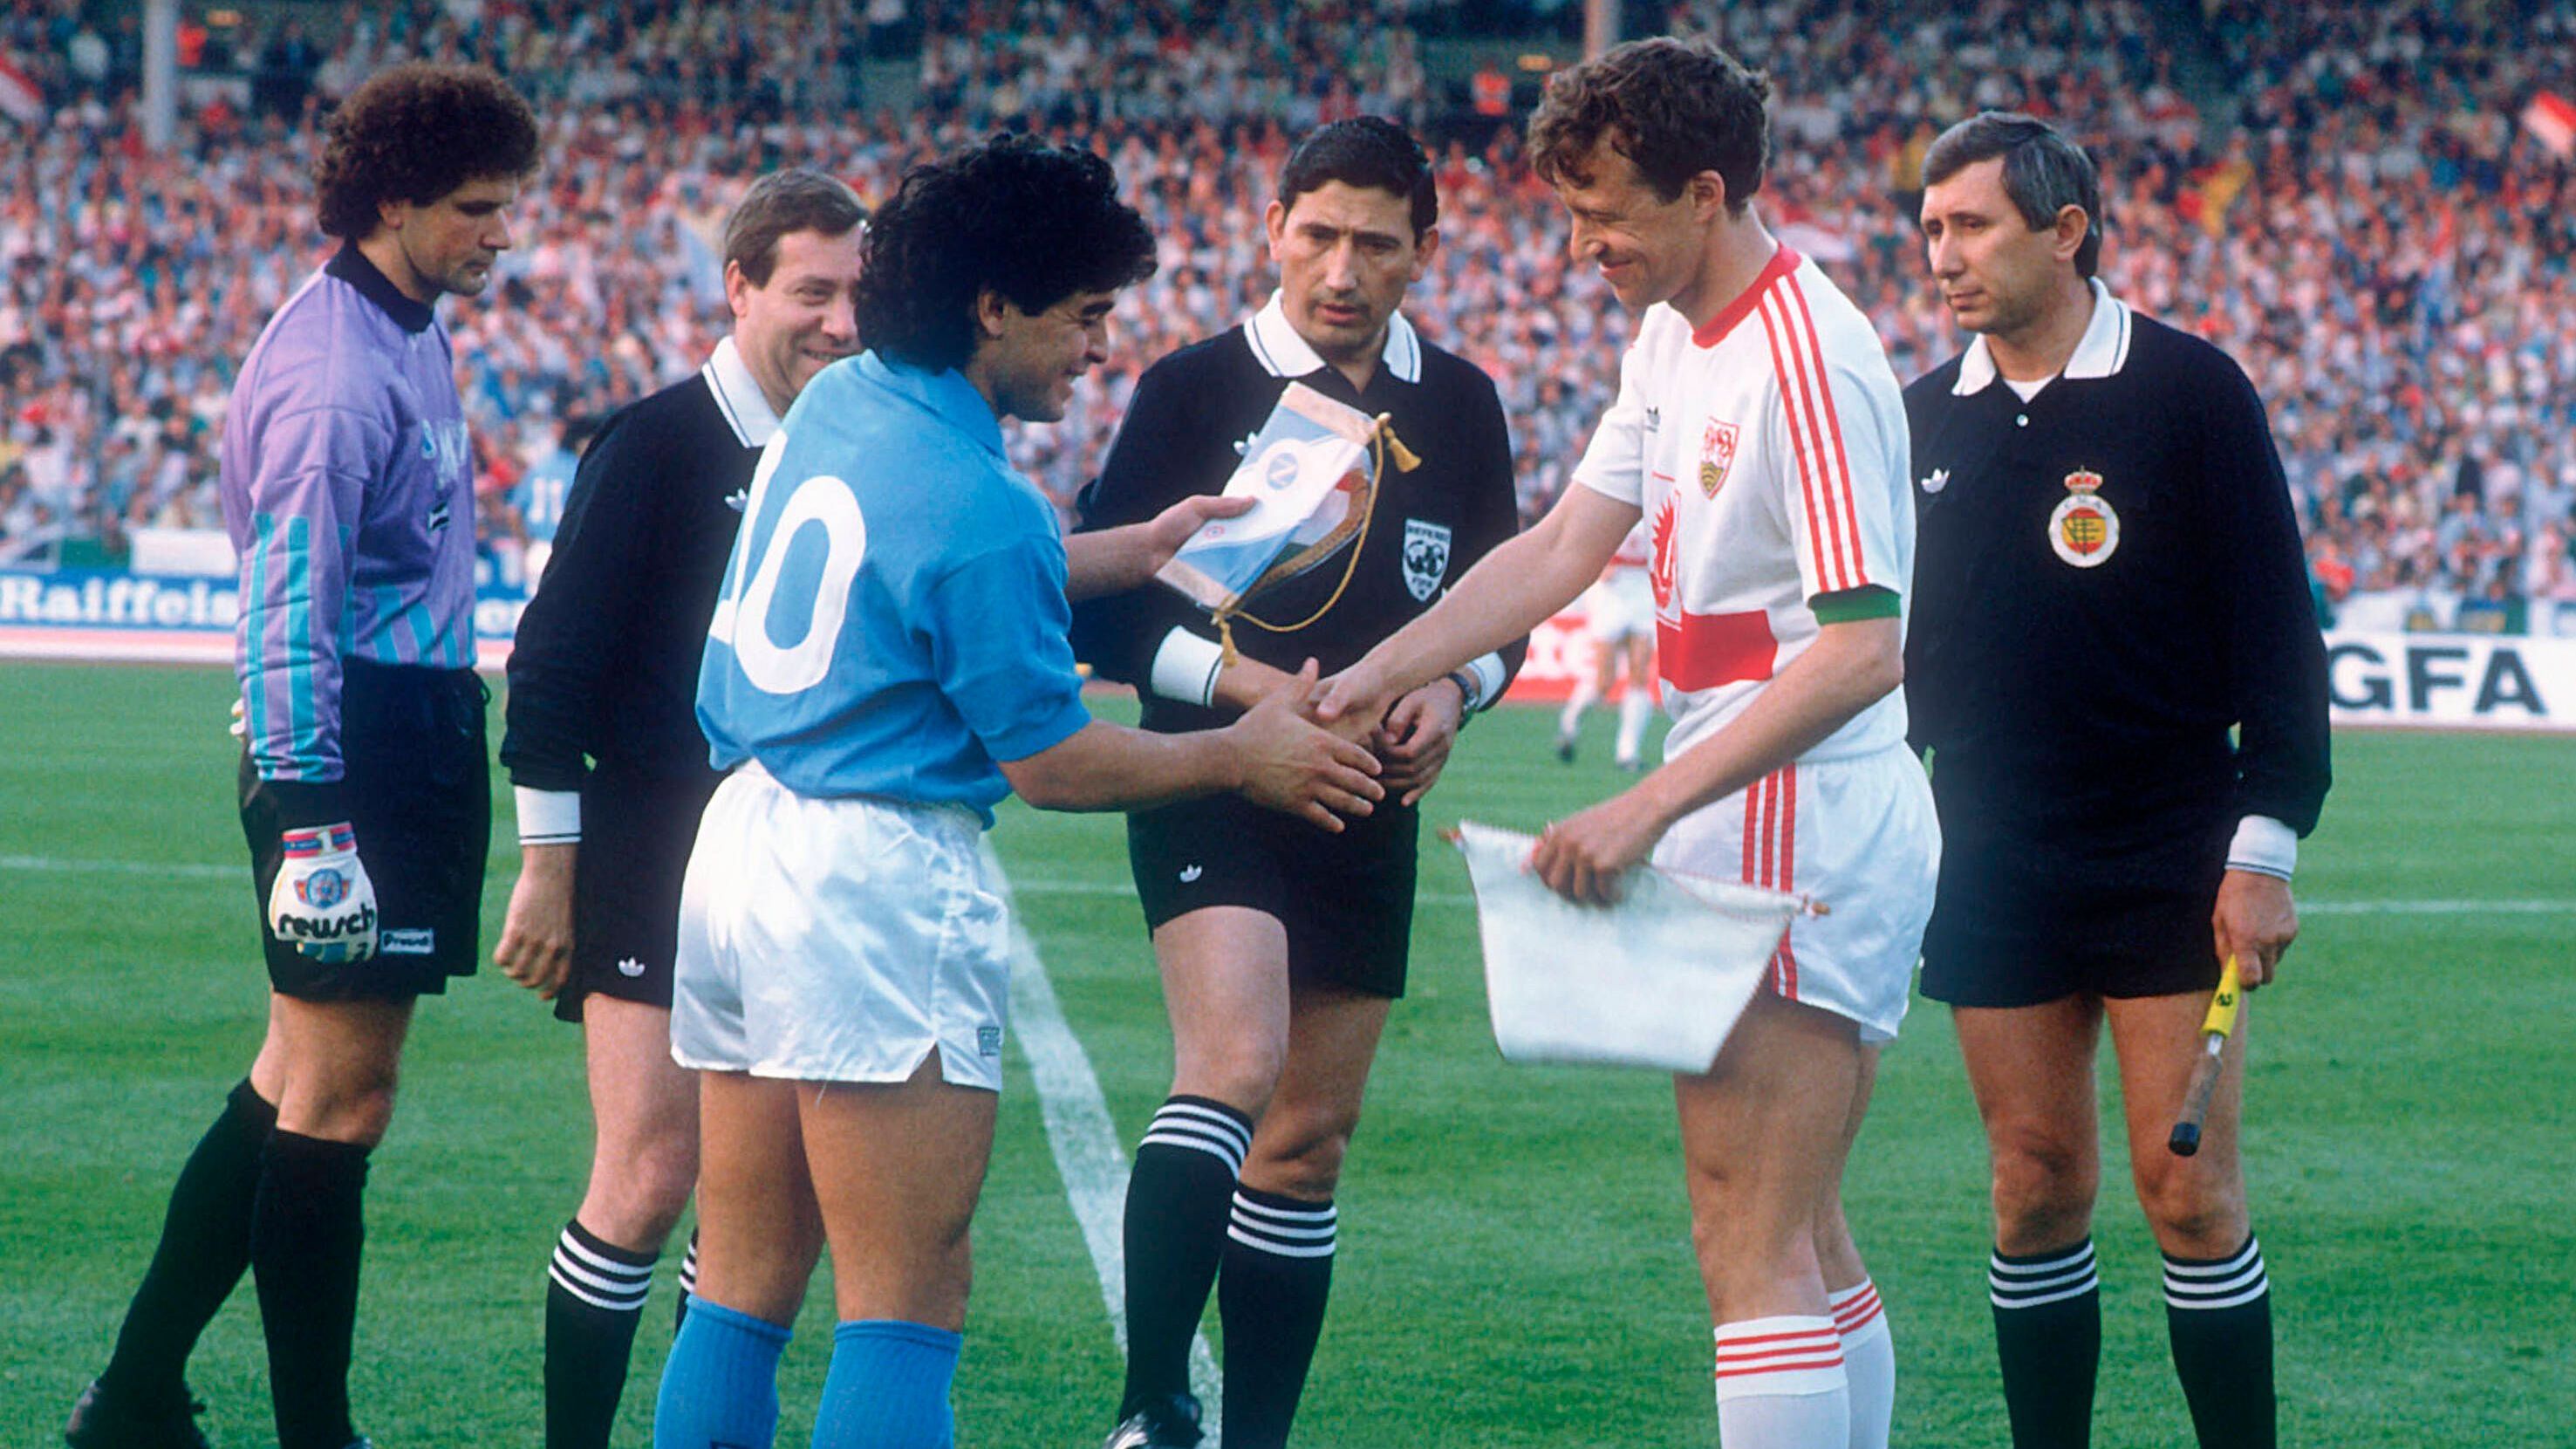 <strong>1988/89: SSC Neapel - VfB Stuttgart</strong><br>Nur ein Jahr später versuchte der VfB sein Glück, allerdings vergeblich. 1:2 und 3:3 hieß es nach zwei Spielen, Napoli mit keinem Geringeren als Diego Maradona wurde Champion.